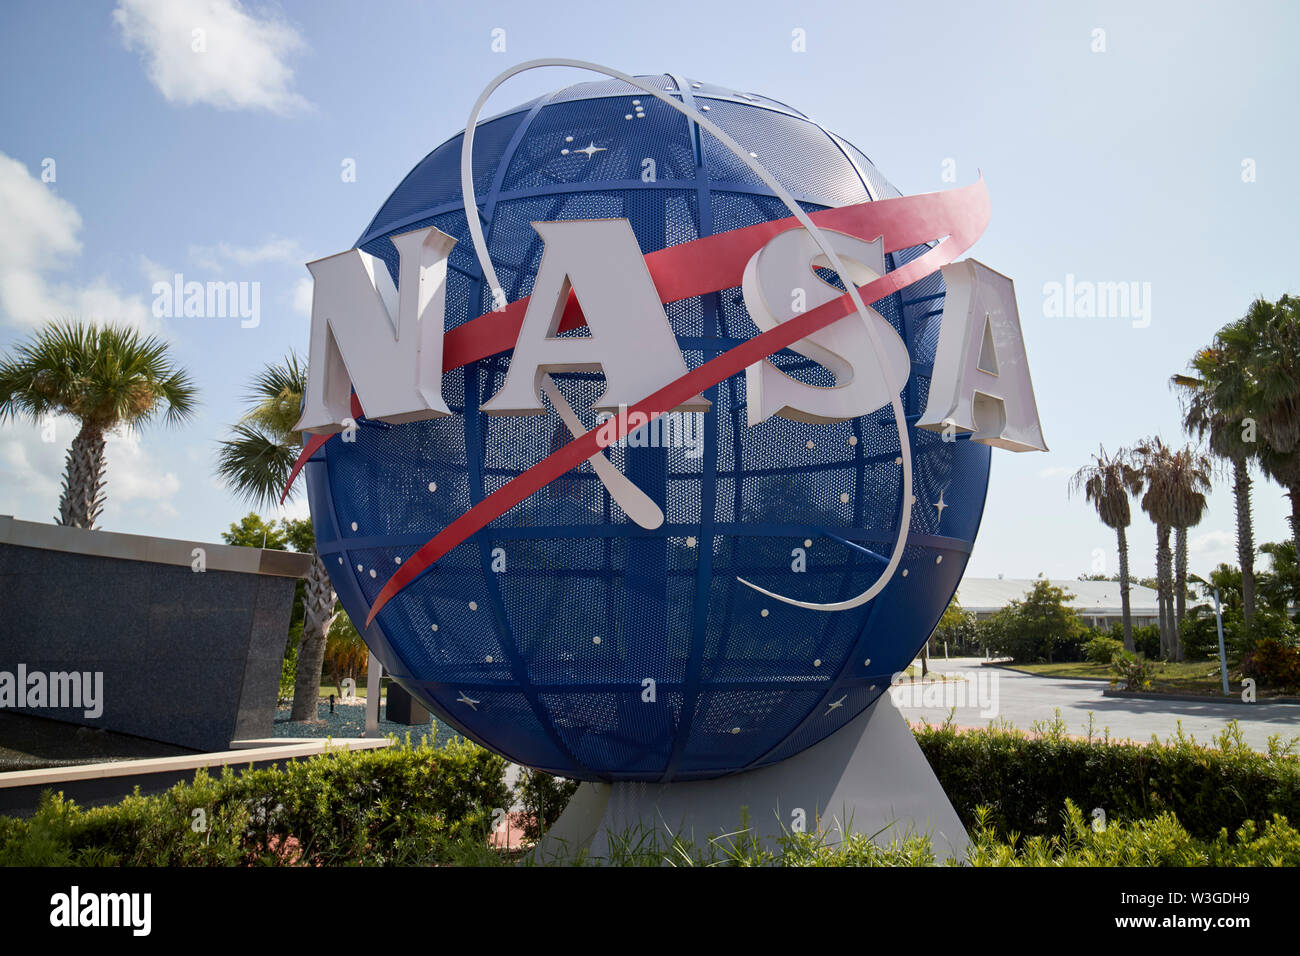 Nasa ball logo at the entrance to Kennedy Space Center Florida USA Stock Photo